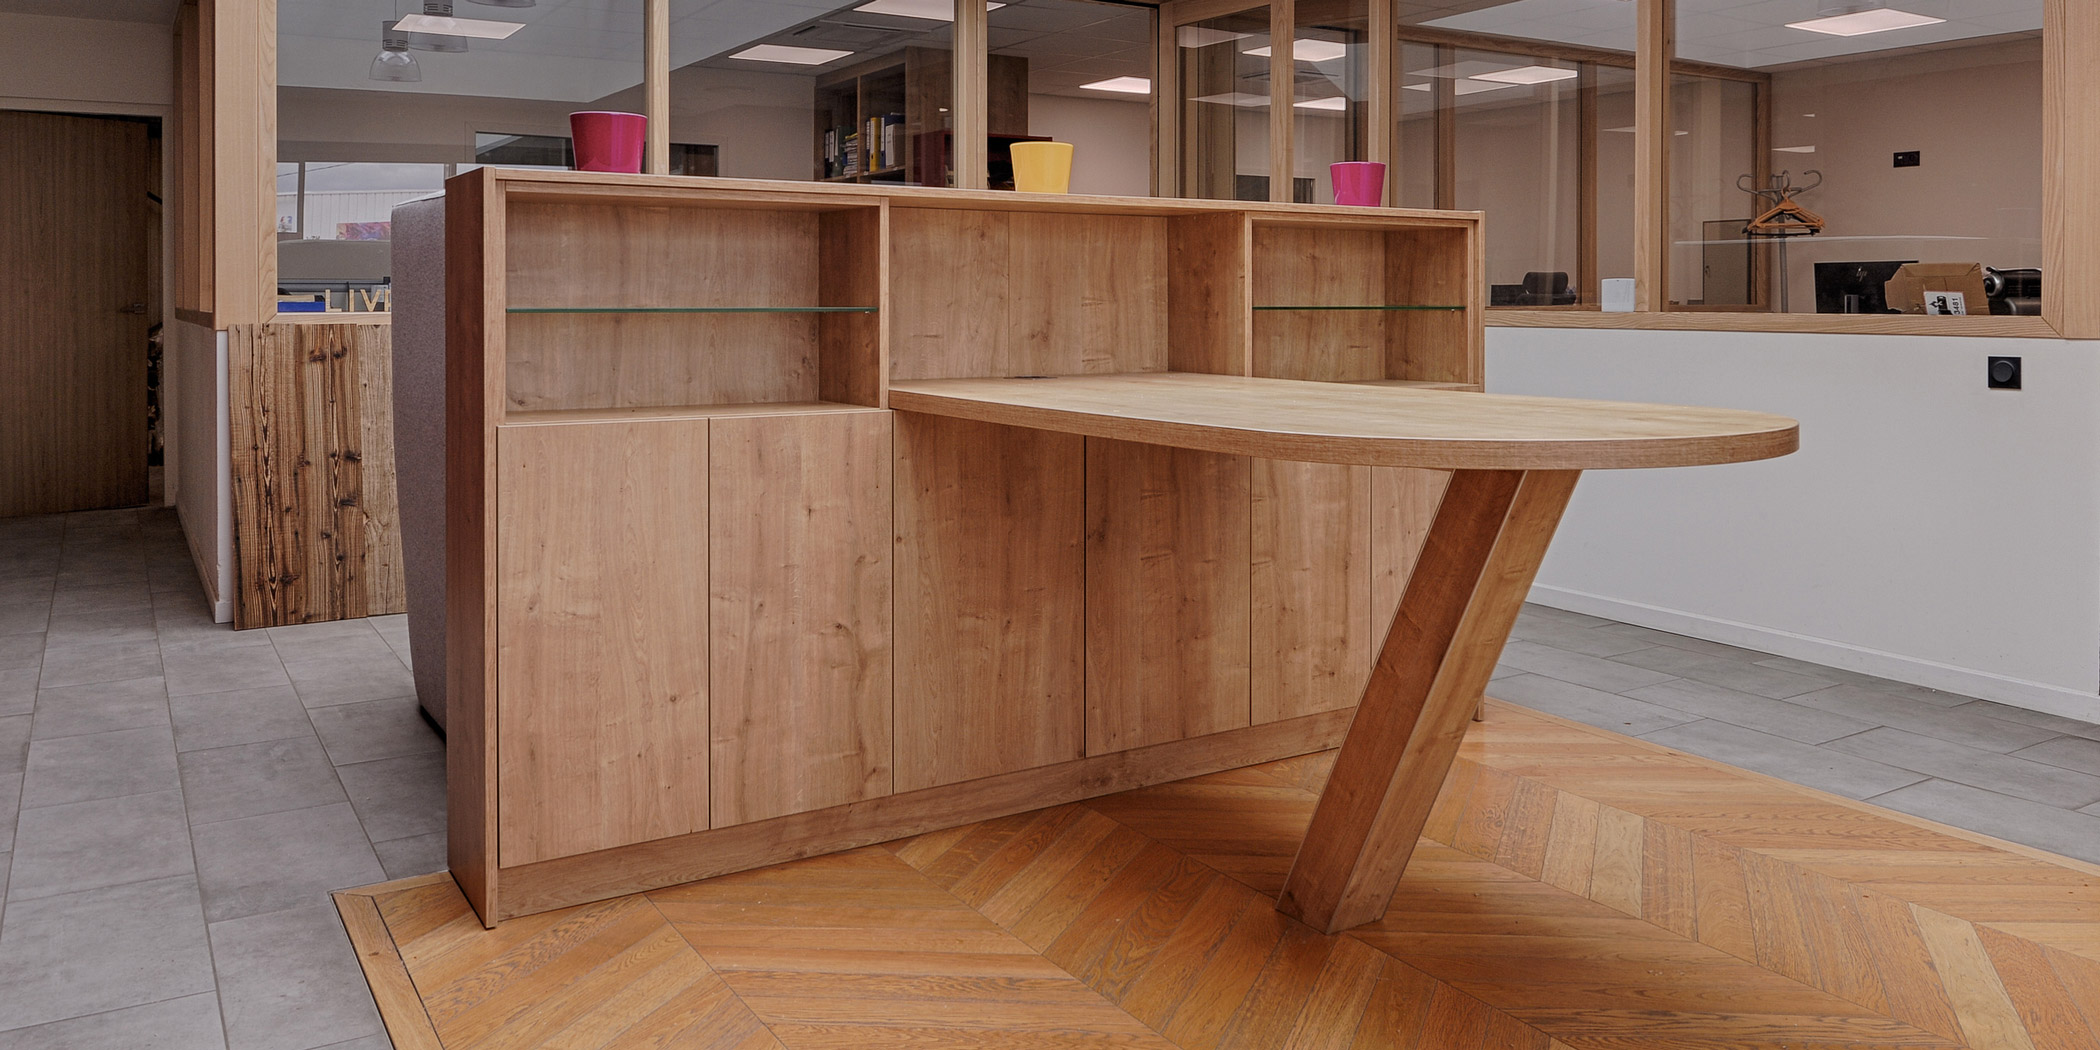 Découvrez les étapes de fabrication d'un mobilier en bois dans notre atelier par Vallon Faure